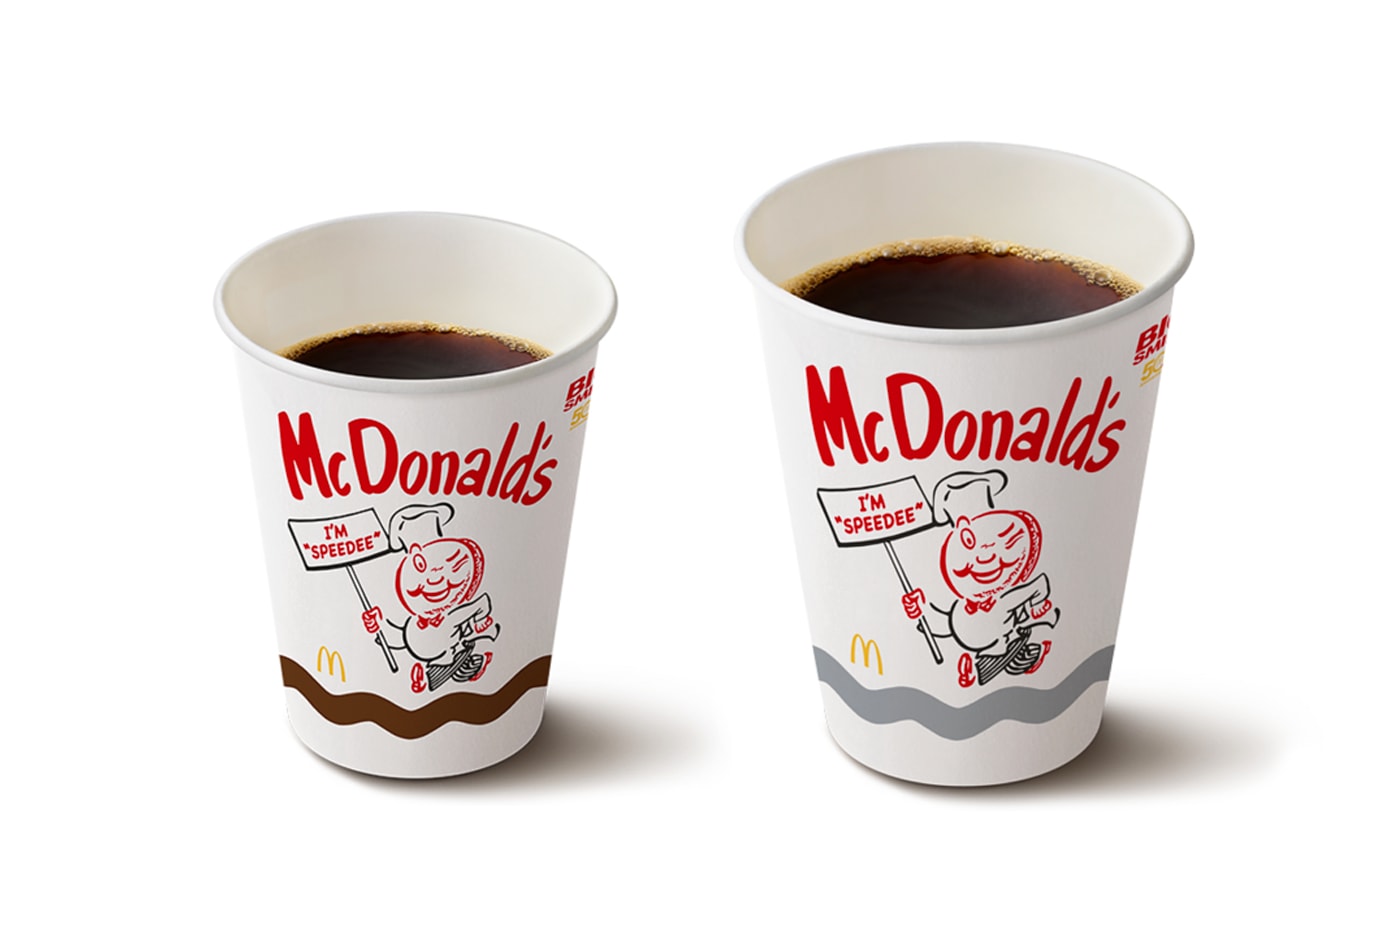 マクドナルドが日本上陸50周年を記念したヴィンテージデザインのパッケージを展開 McDonald’s Japan Original Speedee Mascot Return Info